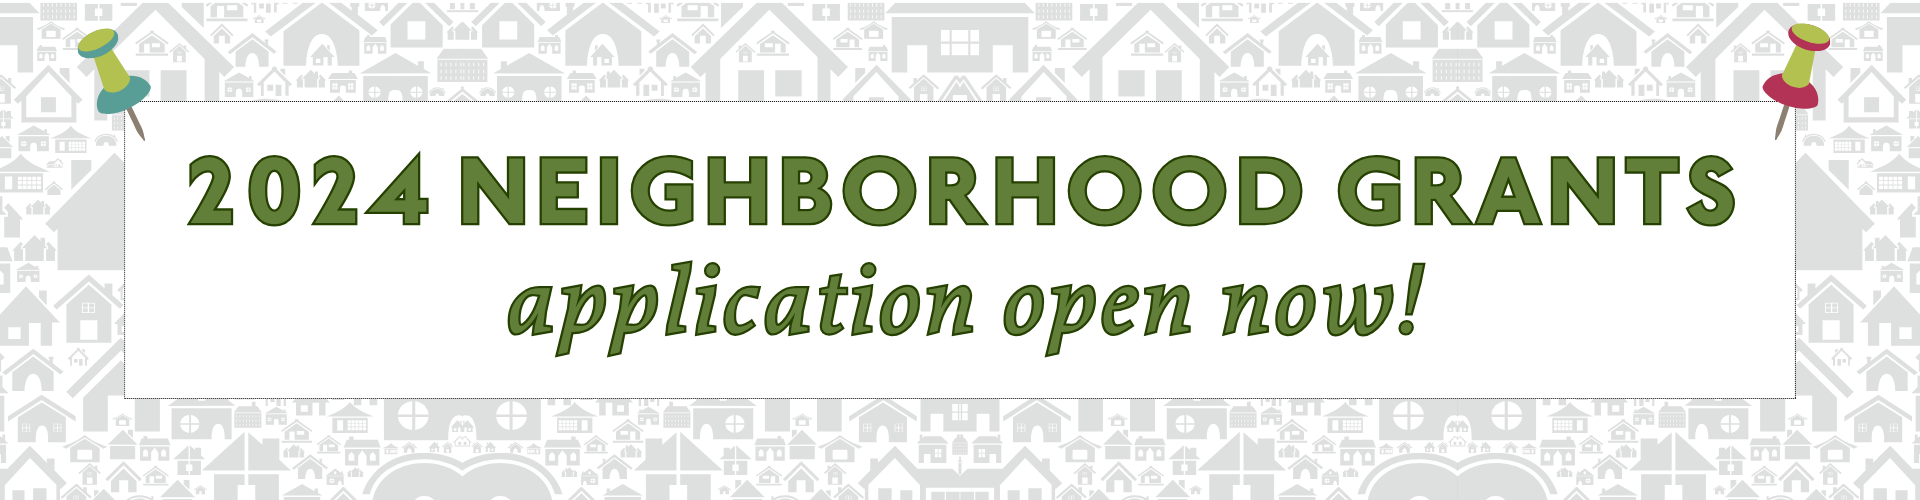 2024 neighborhood grants app now open